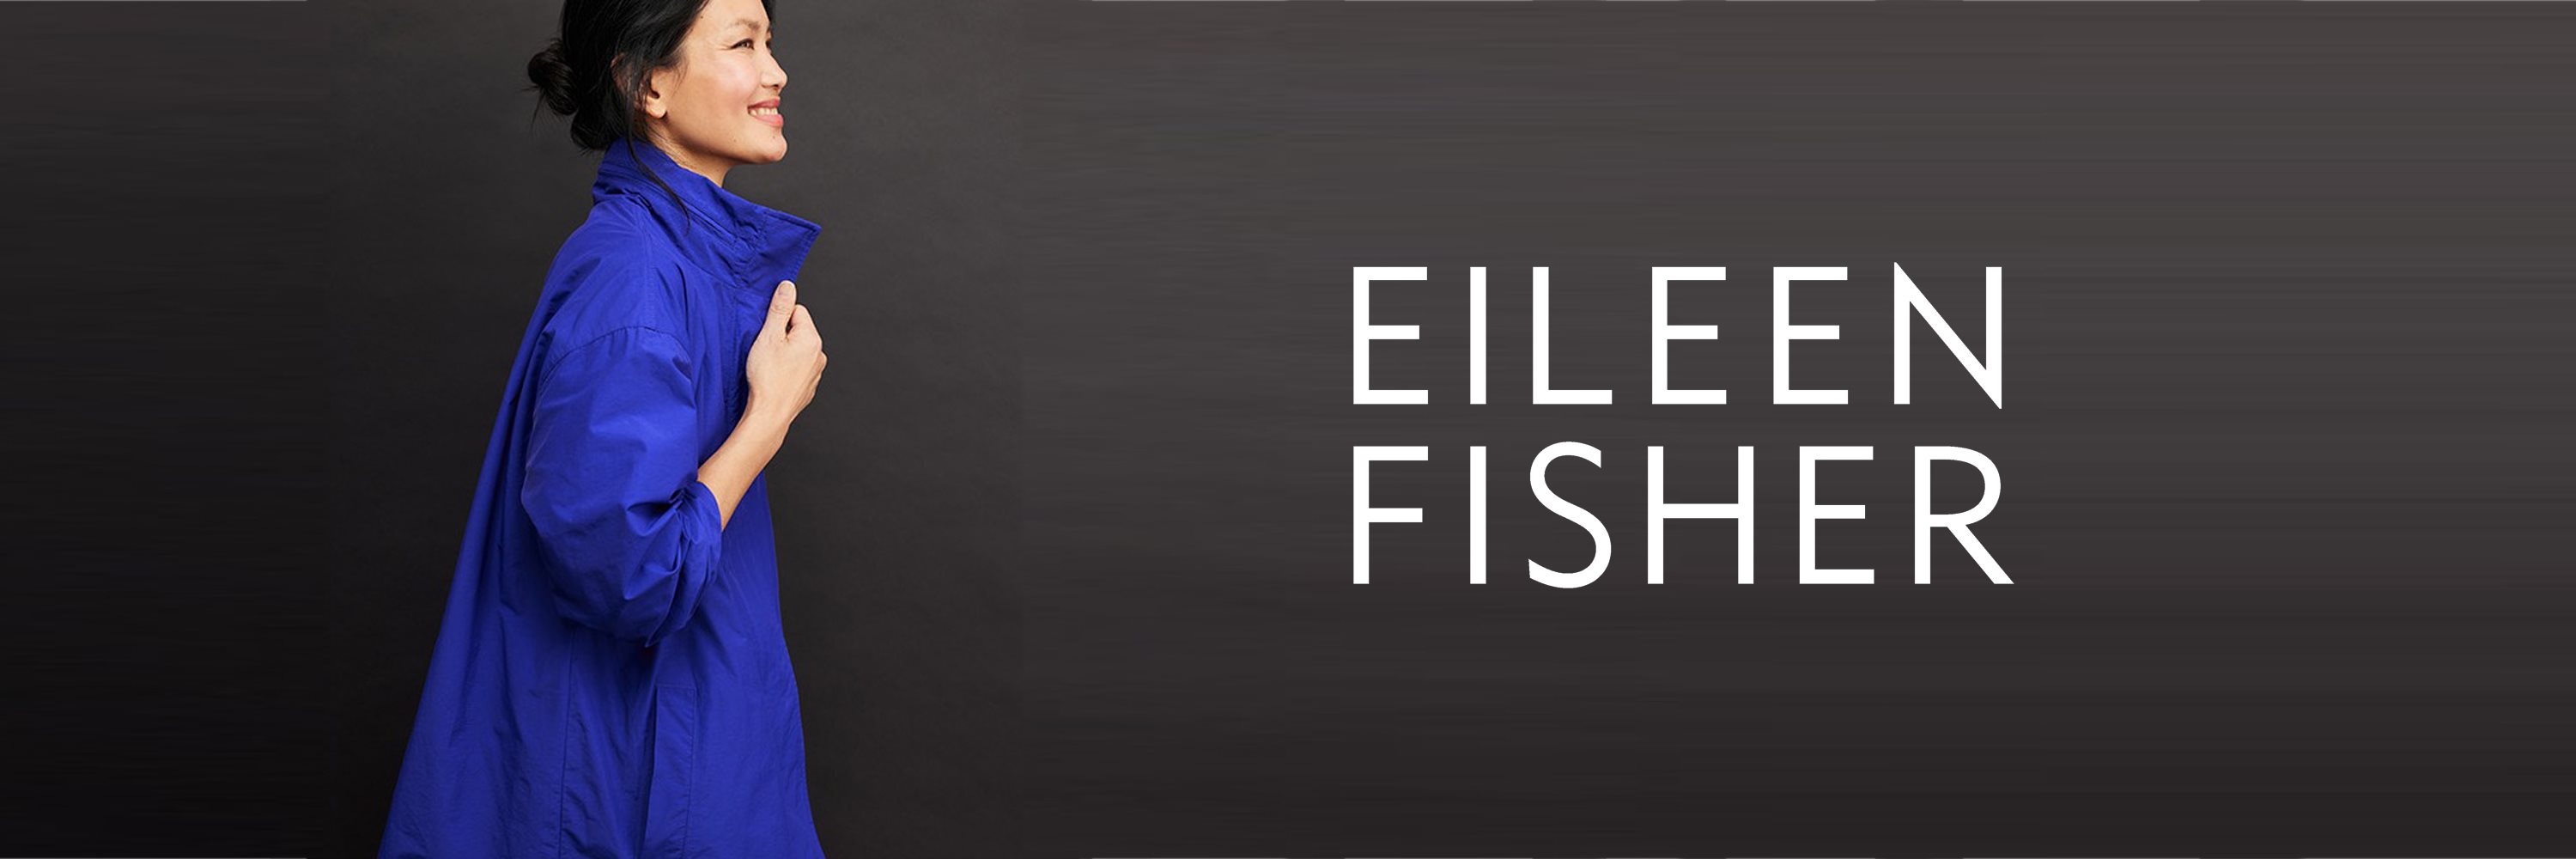 EILEEN FISHER